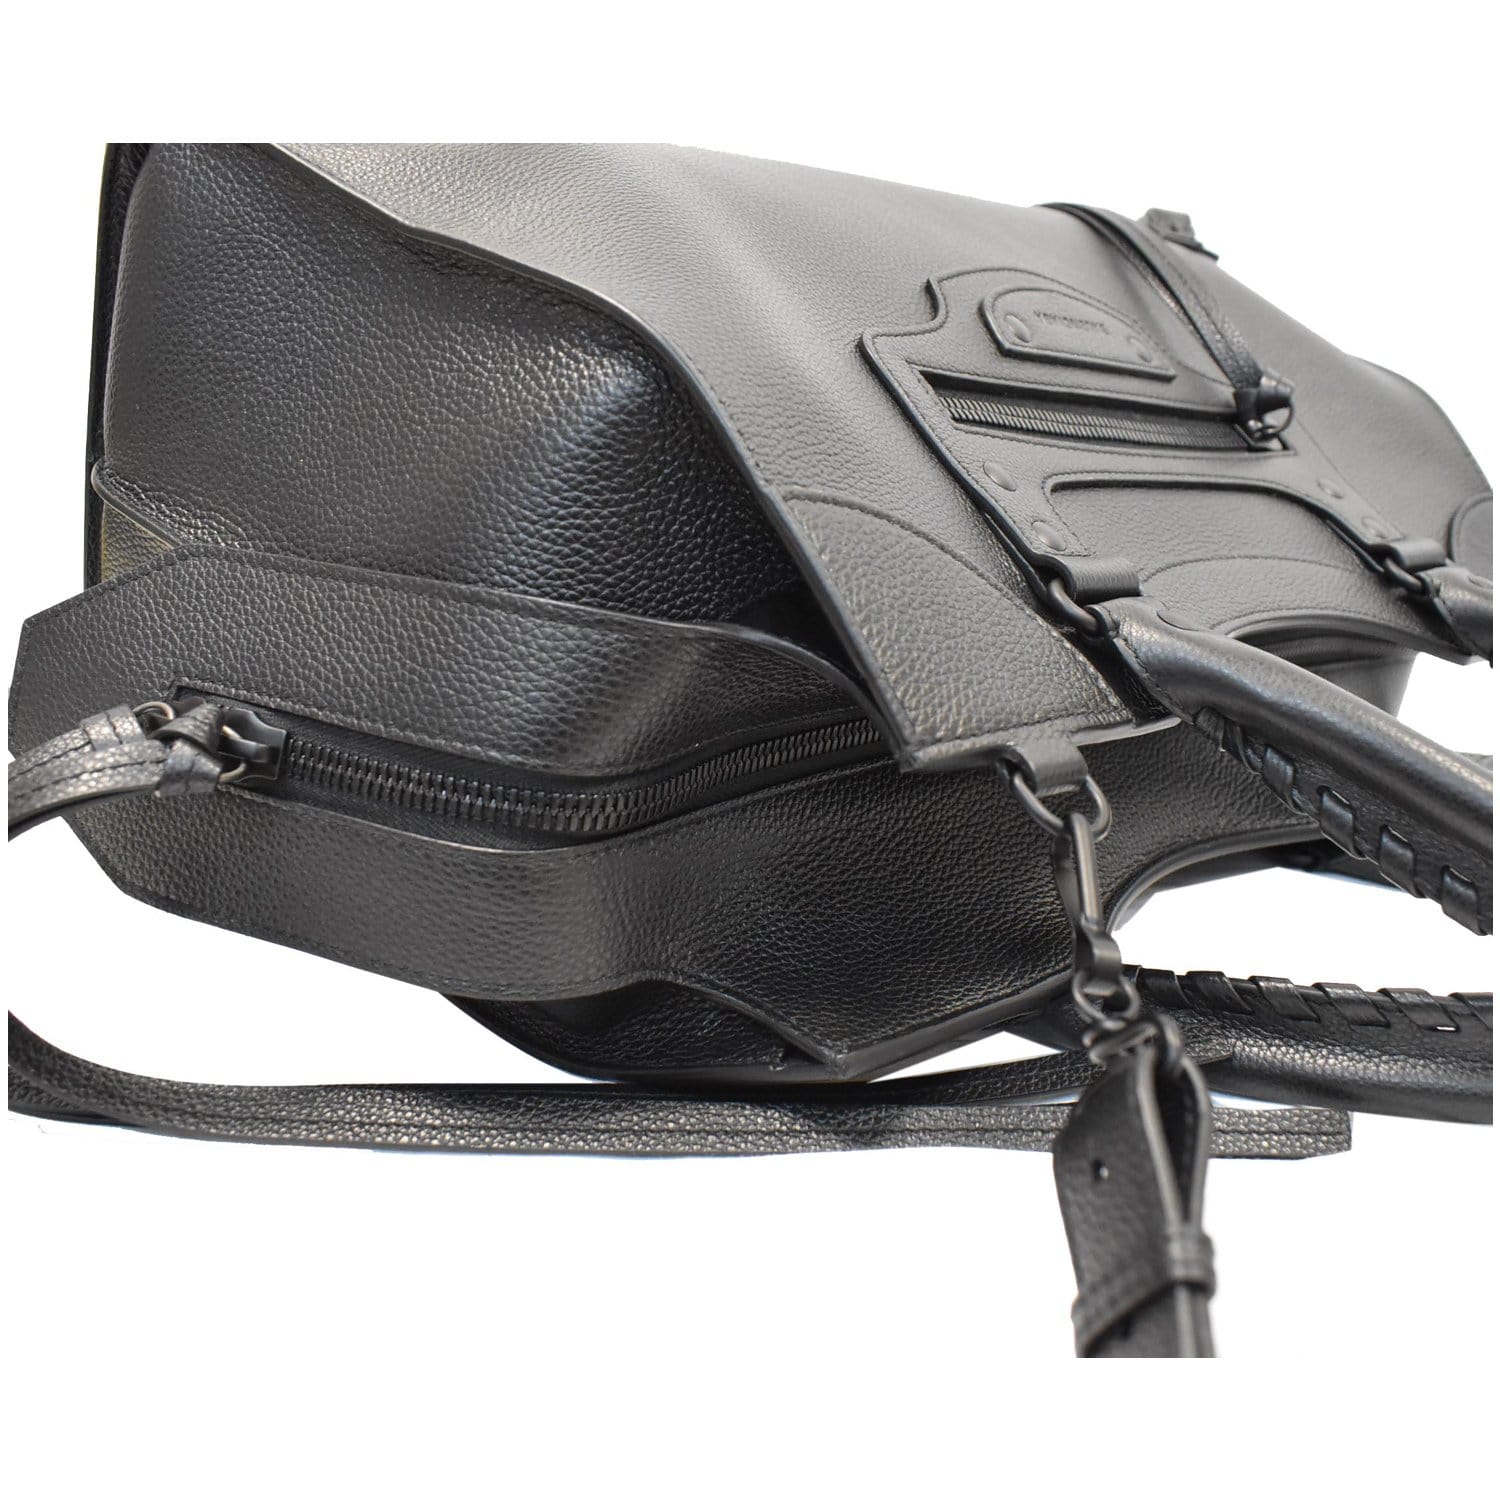 Balenciaga Papier Bags & Handbags for Women, Authenticity Guaranteed